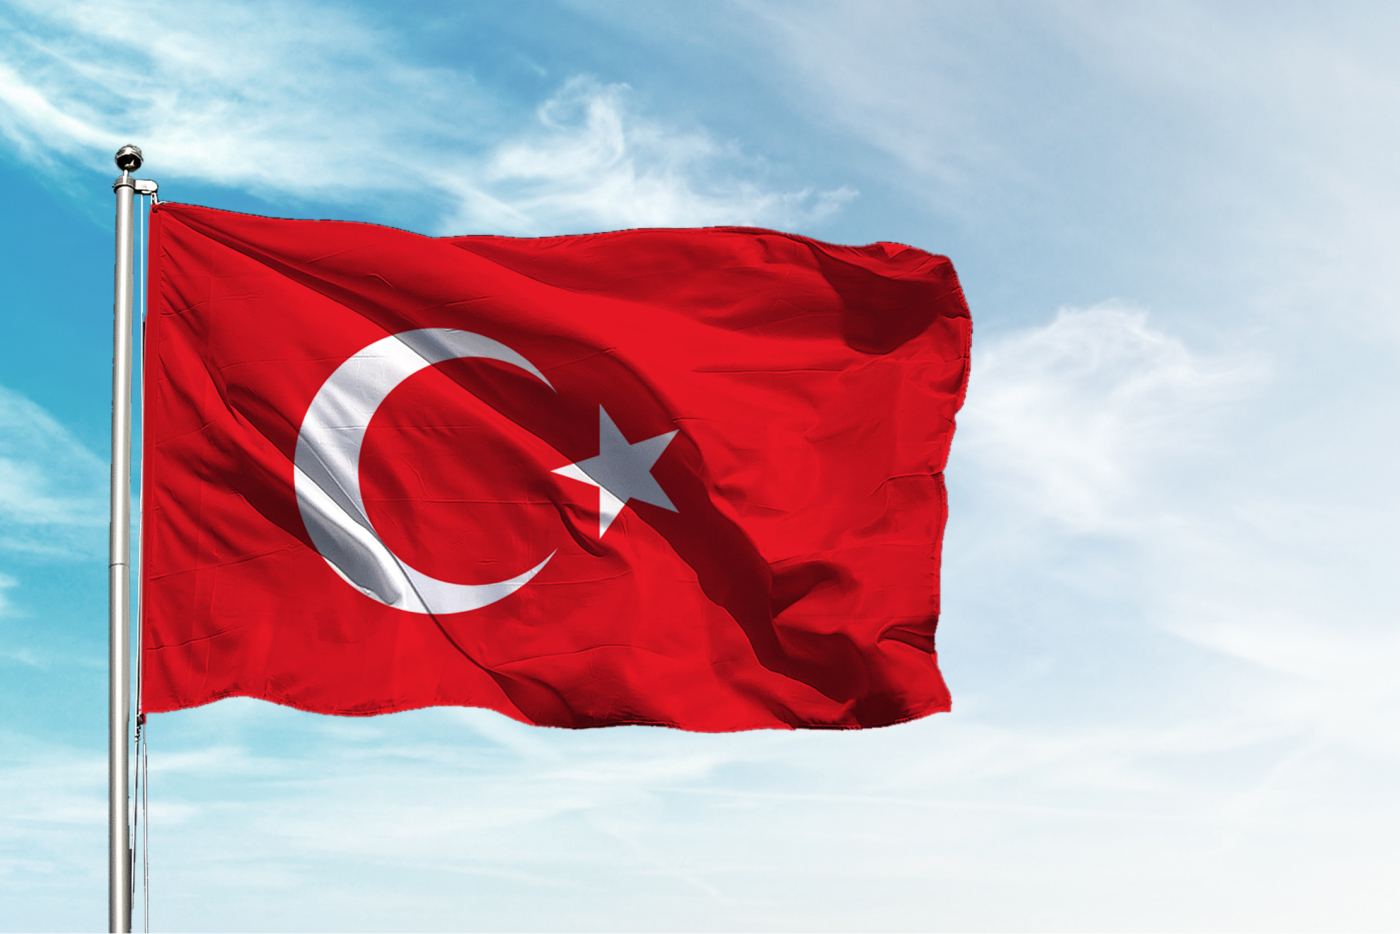 Türkiye Sevdalısı Eğitimciler Olarak, 24 Kasım Öğretmenler Günü ’nü Gurur ve Övünçle Kutlamaya Devam Edeceğiz.